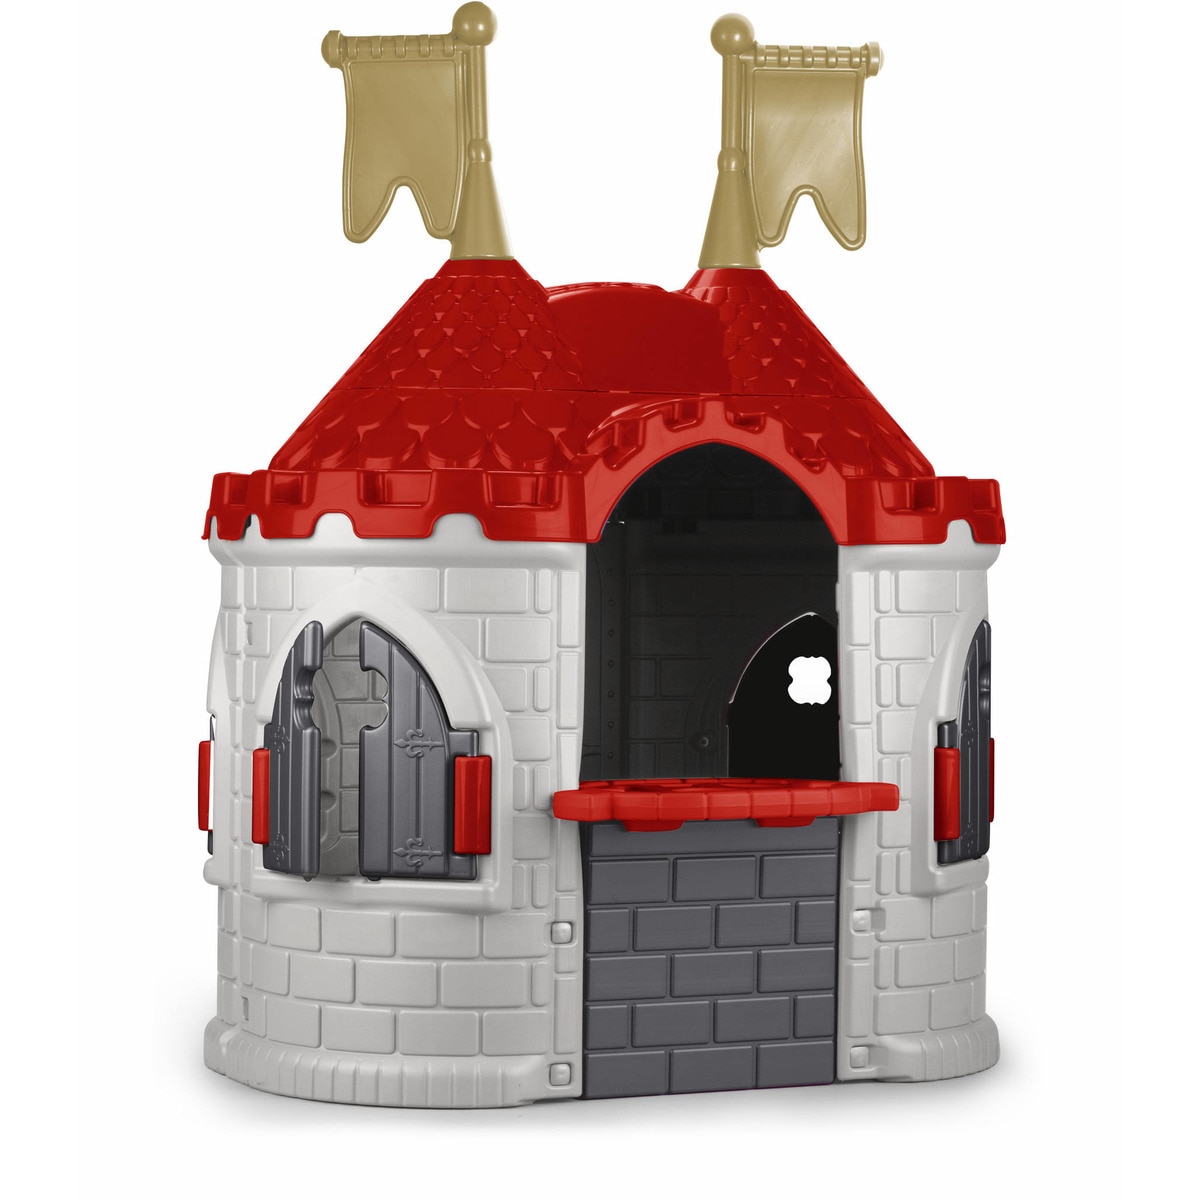 Домик игровой Feber Средневековый замок домик детский игровой my new house smoby 810406